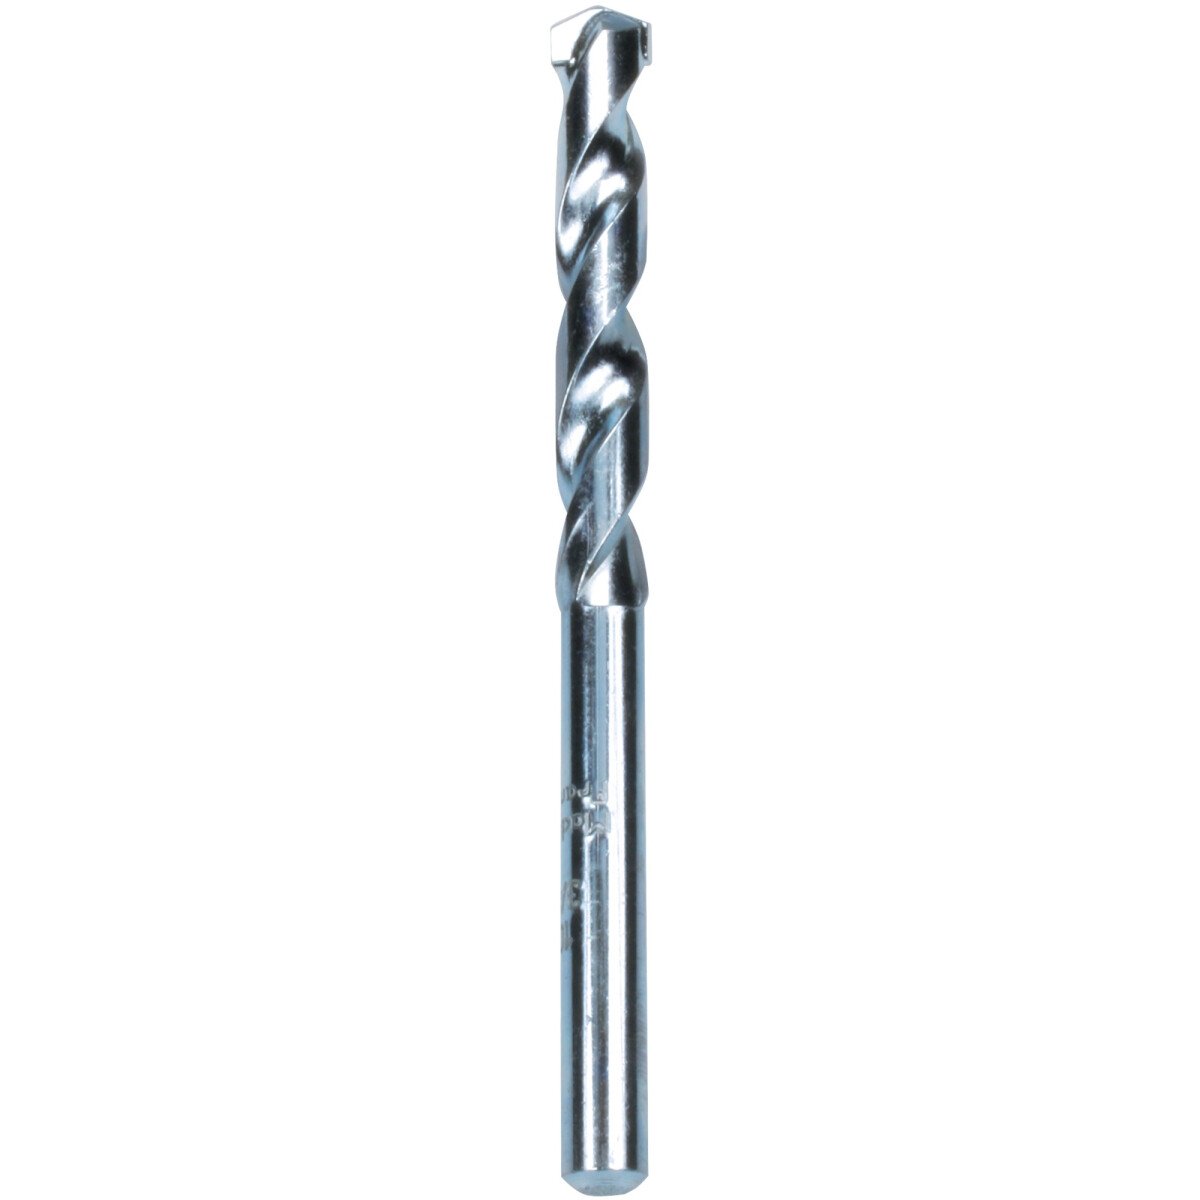 Makita P-19766 Masonry Drill Bit, standard length, 1 per pack Diameter: 9.0mm, Bit Length: 12mm